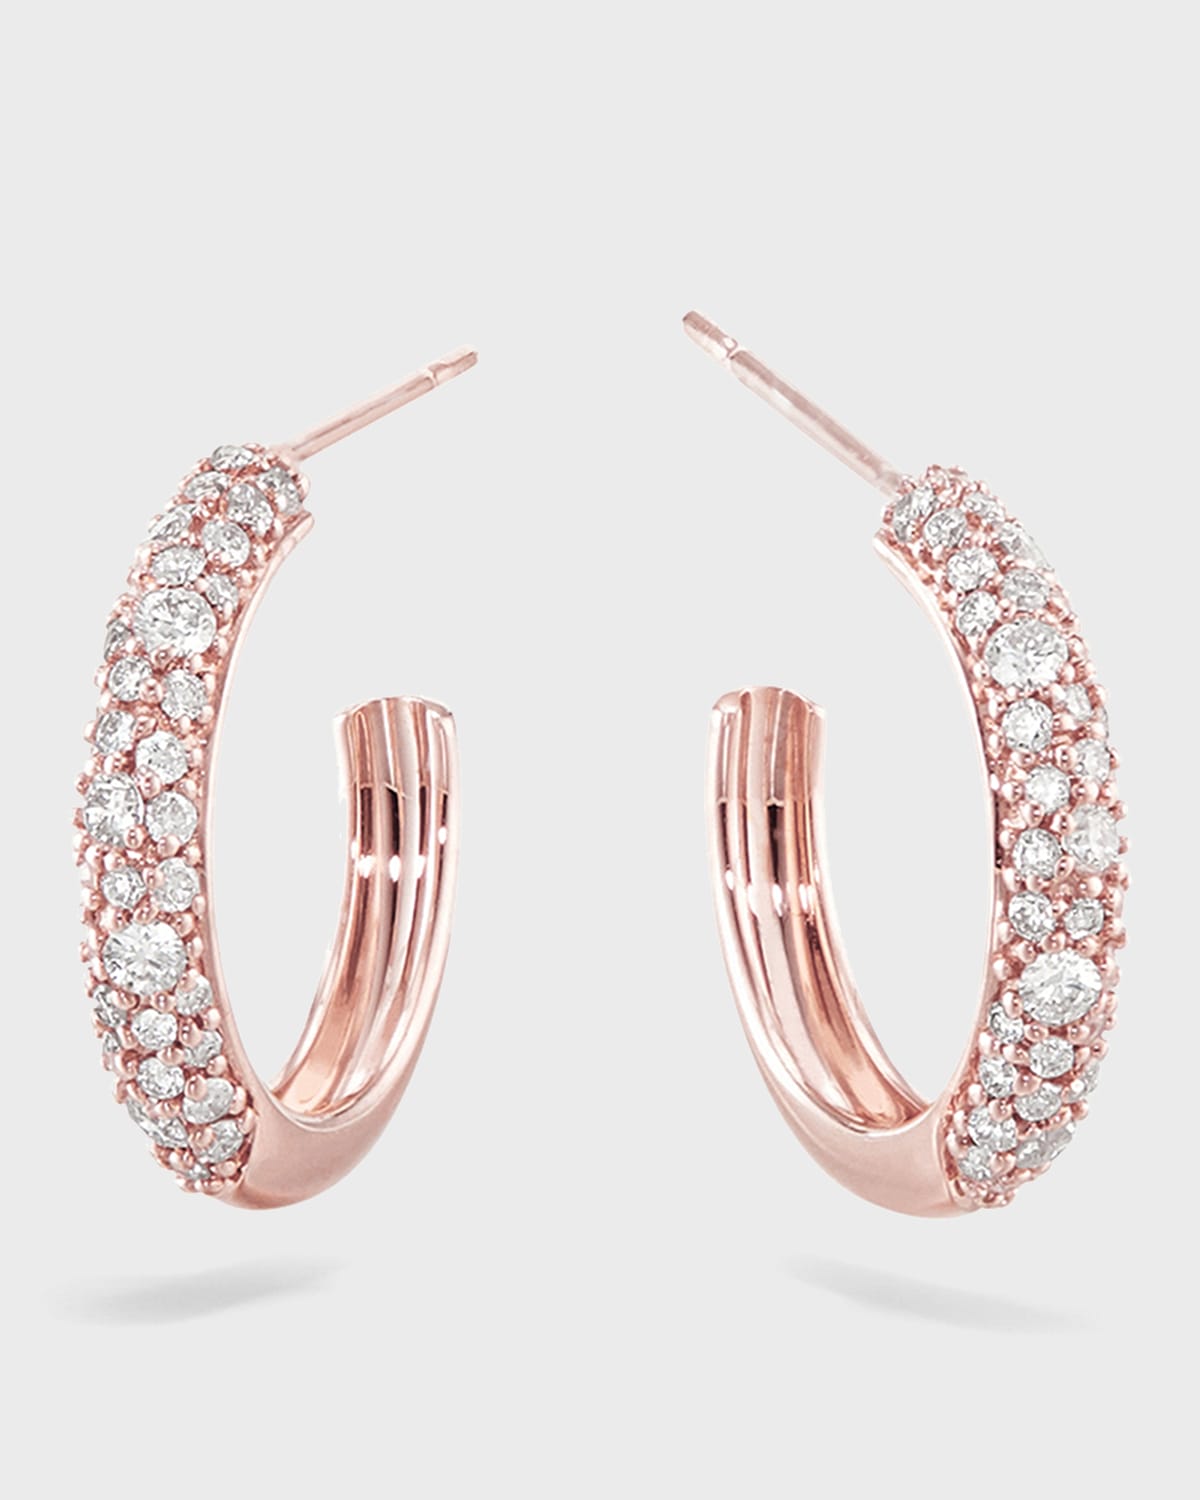 Lana 14k Rose Gold Thin Diamond Cluster Hoop Earrings, 15mm